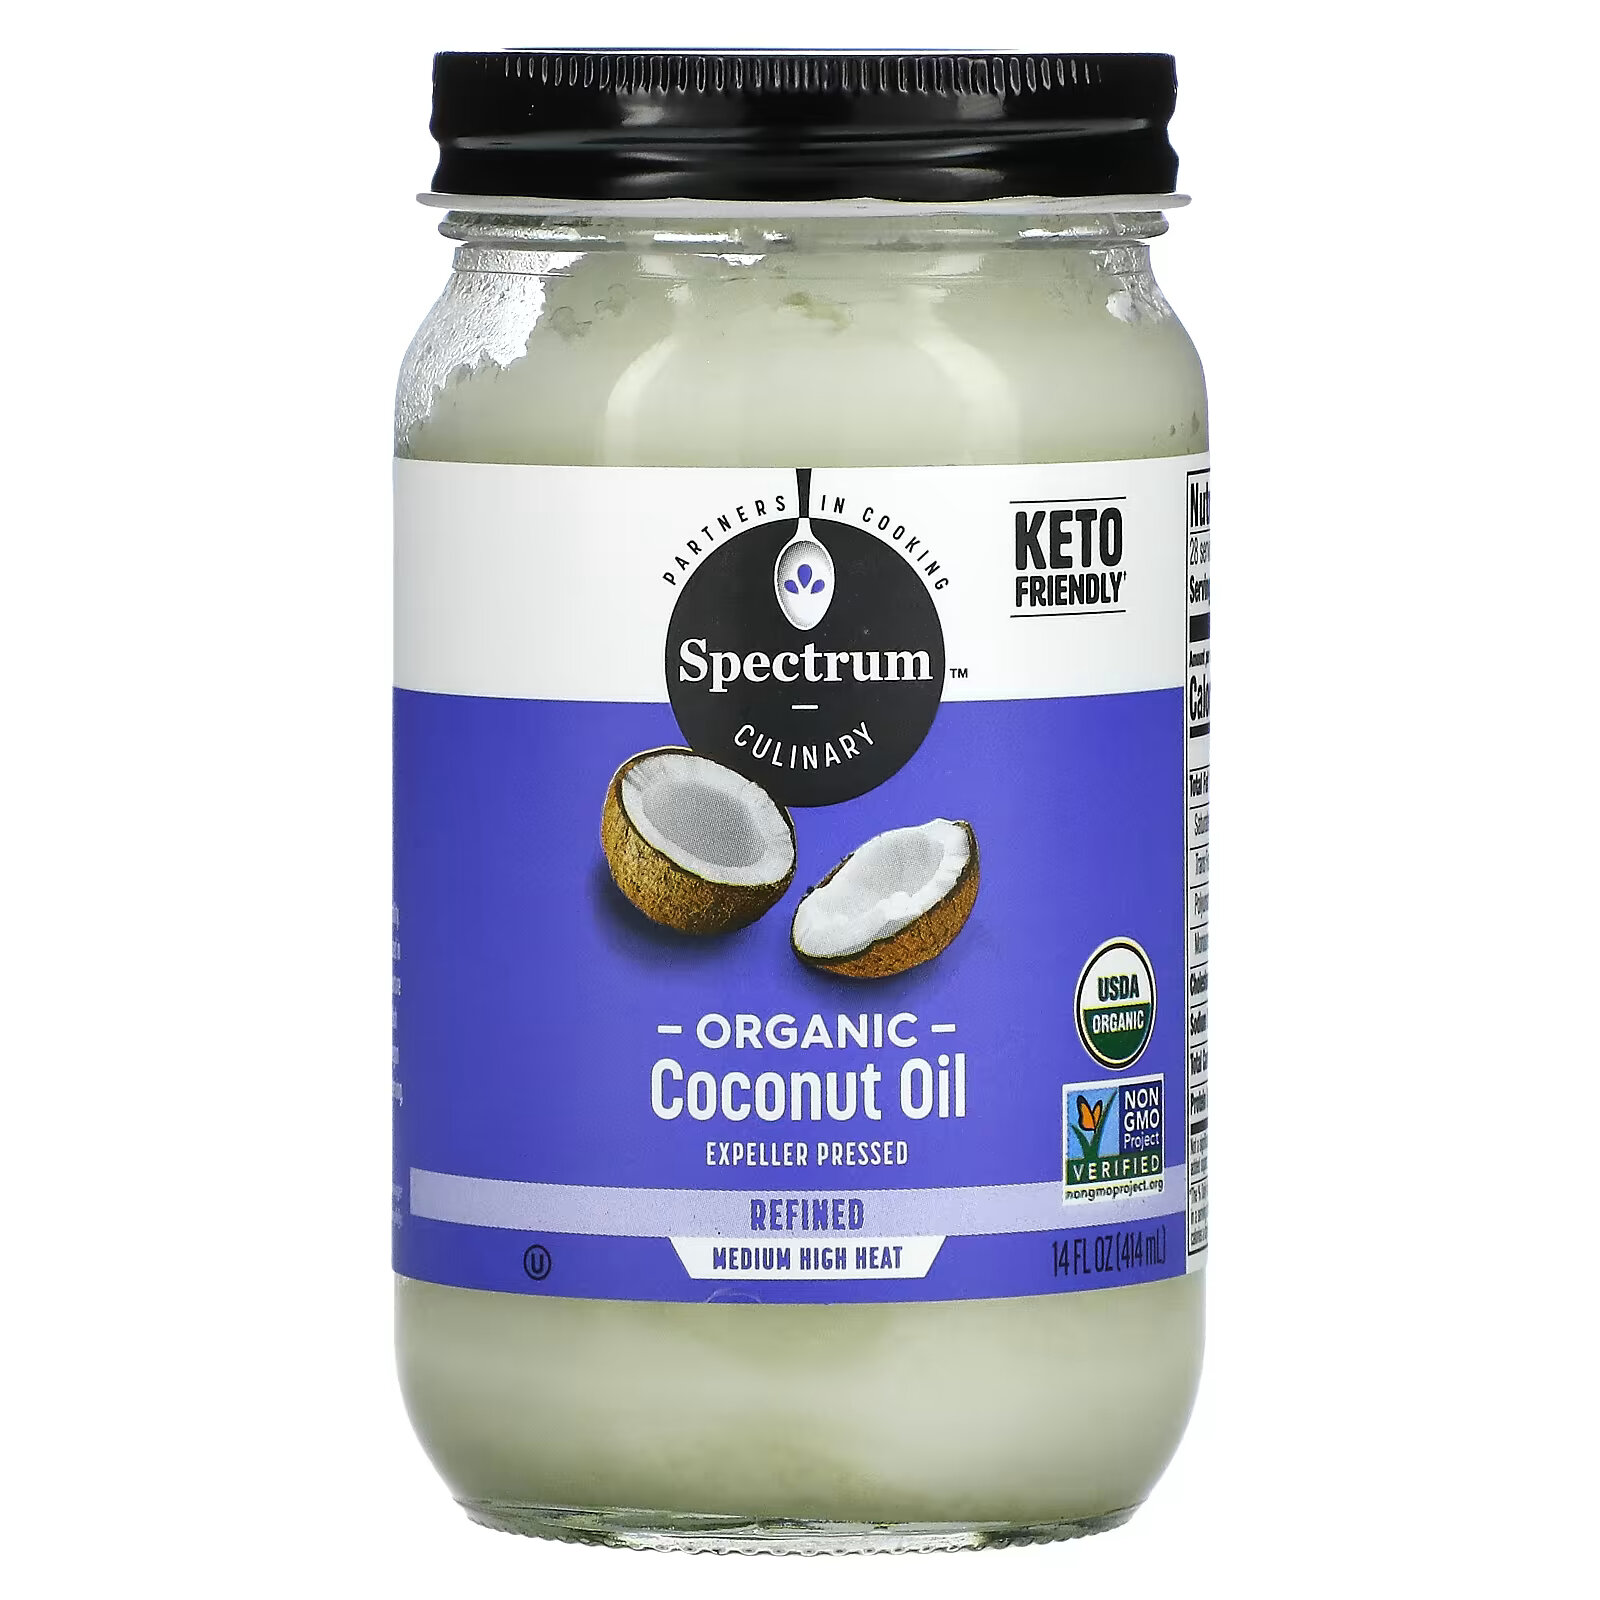 Кокосовое масло Spectrum Culinary рафинированное, 414 мл spectrum culinary органическое кокосовое масло холодного отжима нерафинированное 14 жидких унций 414 мл